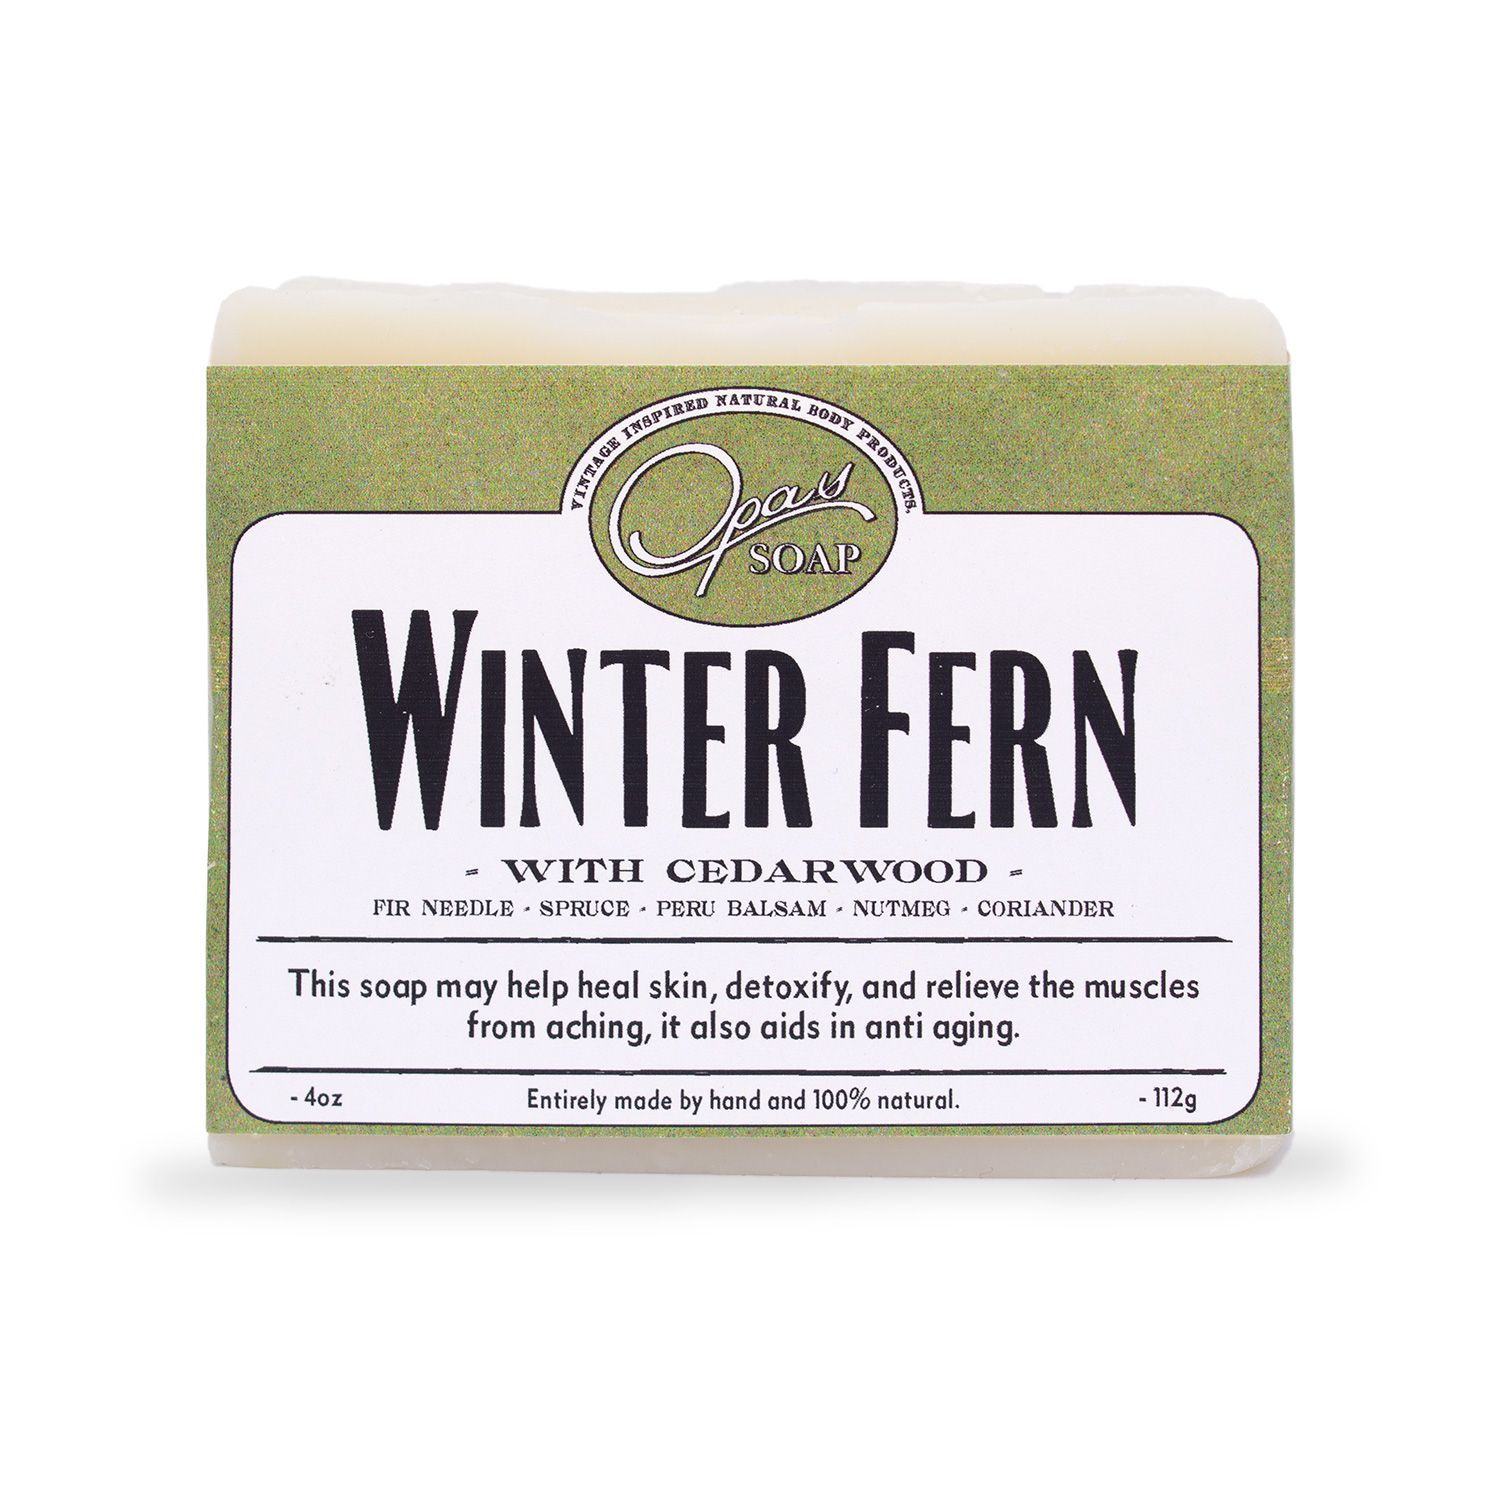 Winter Fern Soap